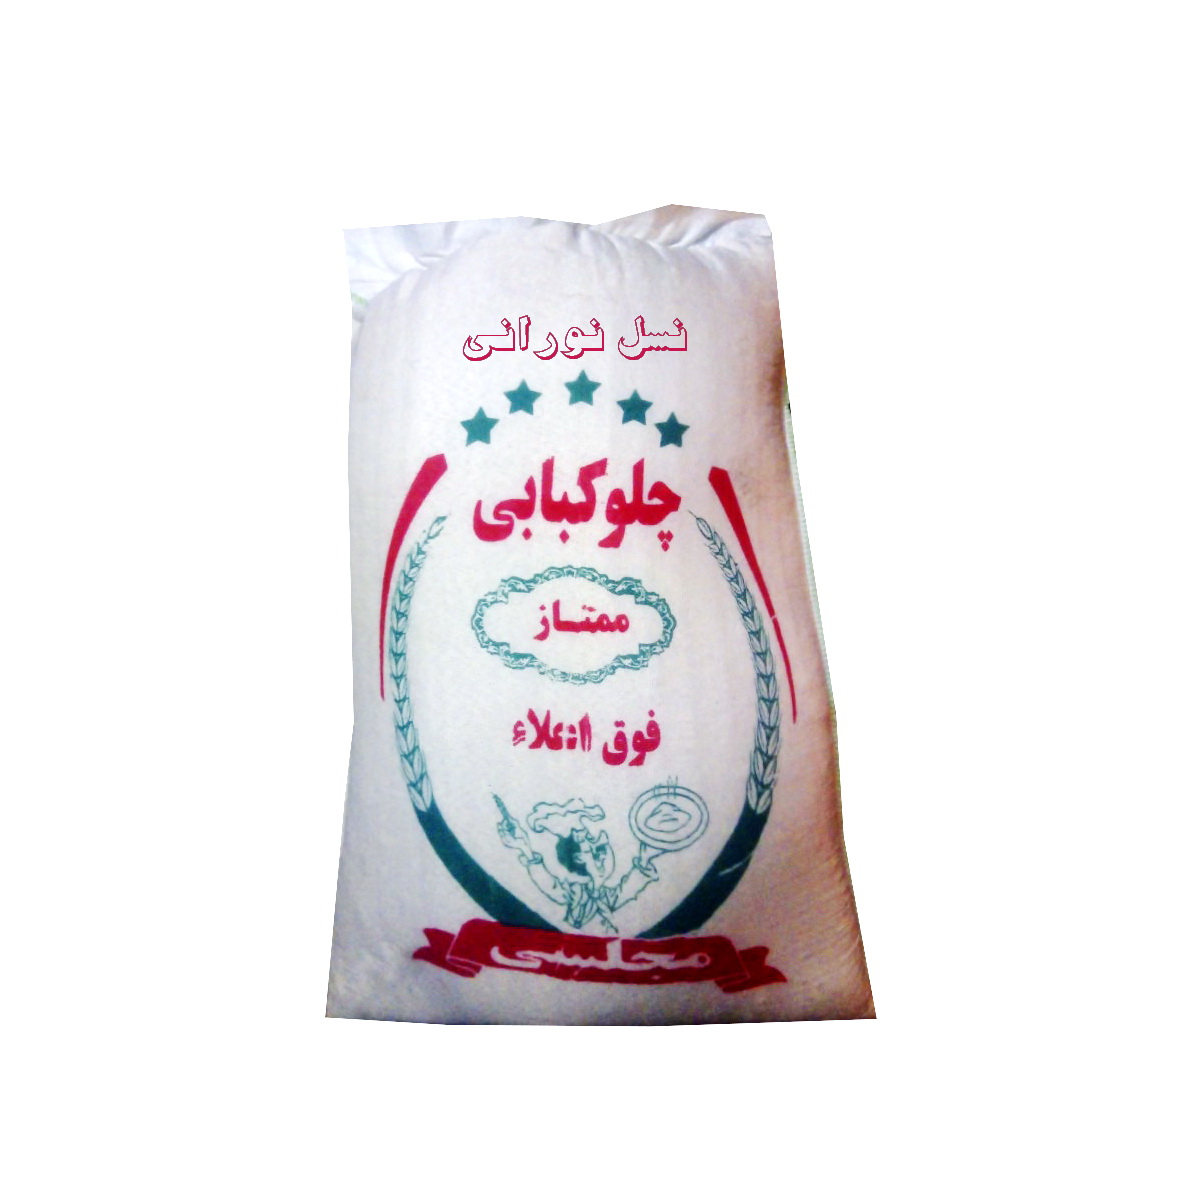 نکته خرید - قیمت روز برنج هاشمی چلوکبابی - 10 کیلوگرم خرید